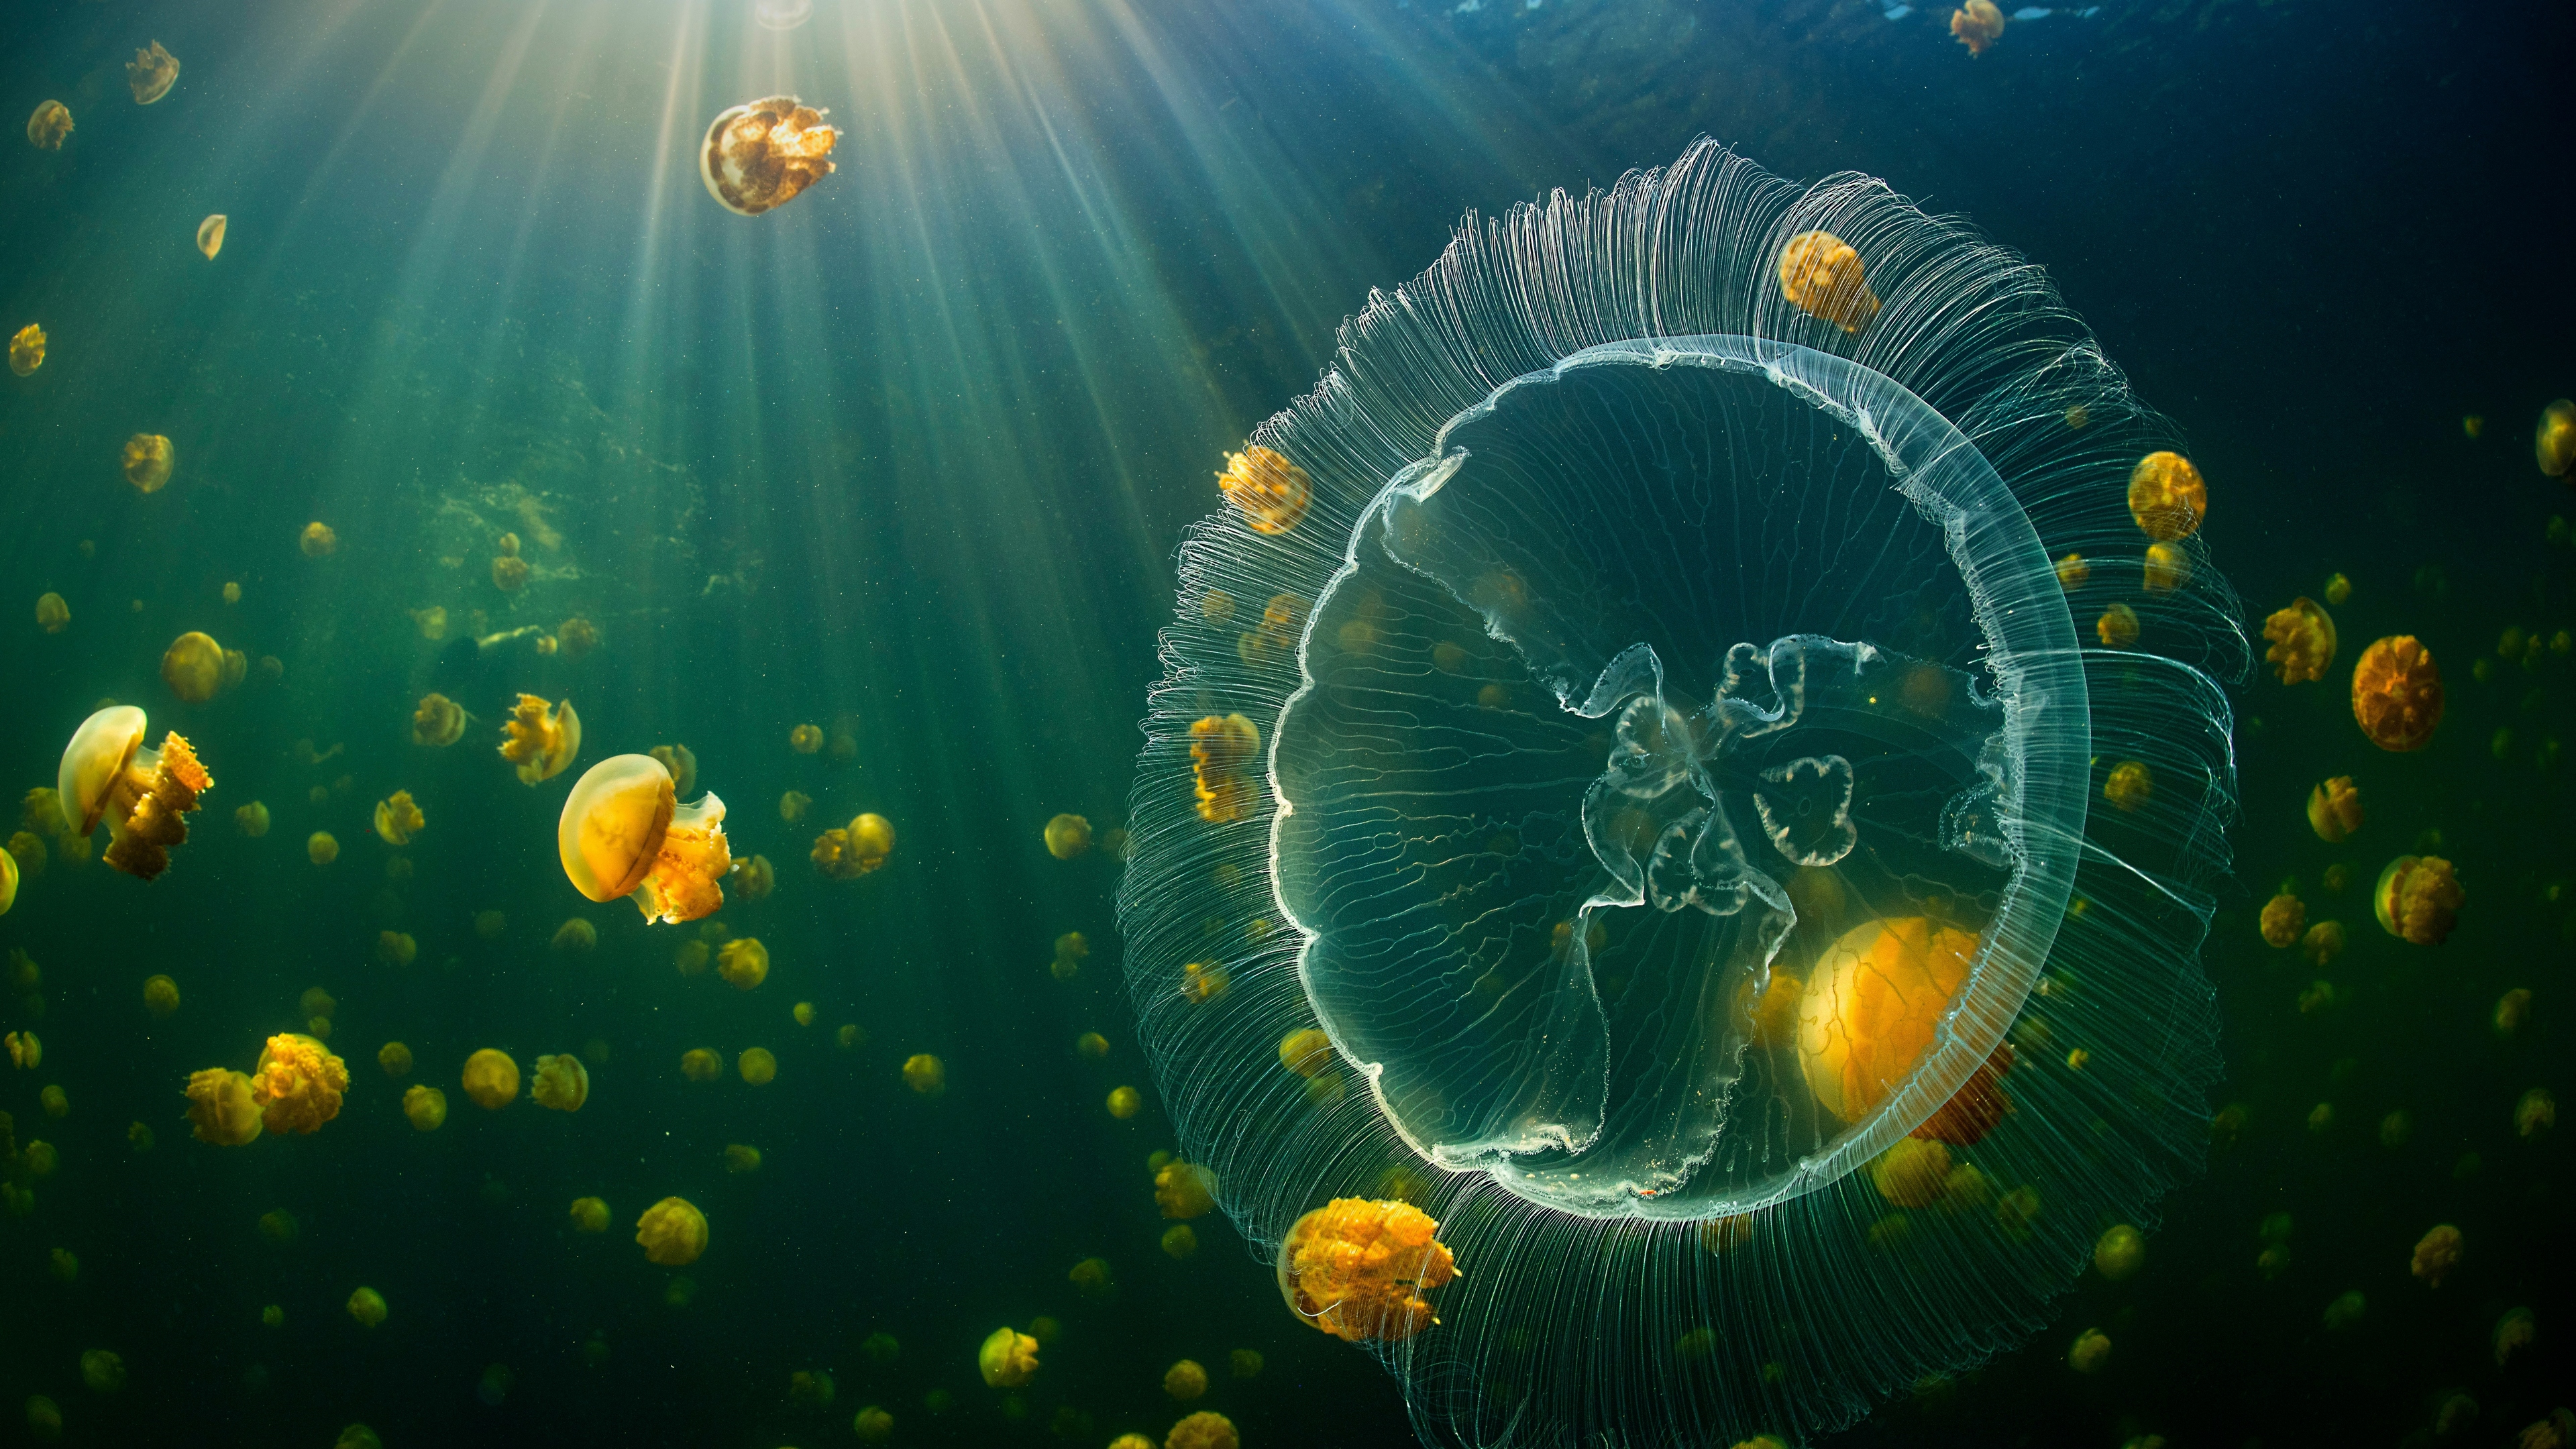 Бесплатное фото Подводный мир с медузами в Индонезии